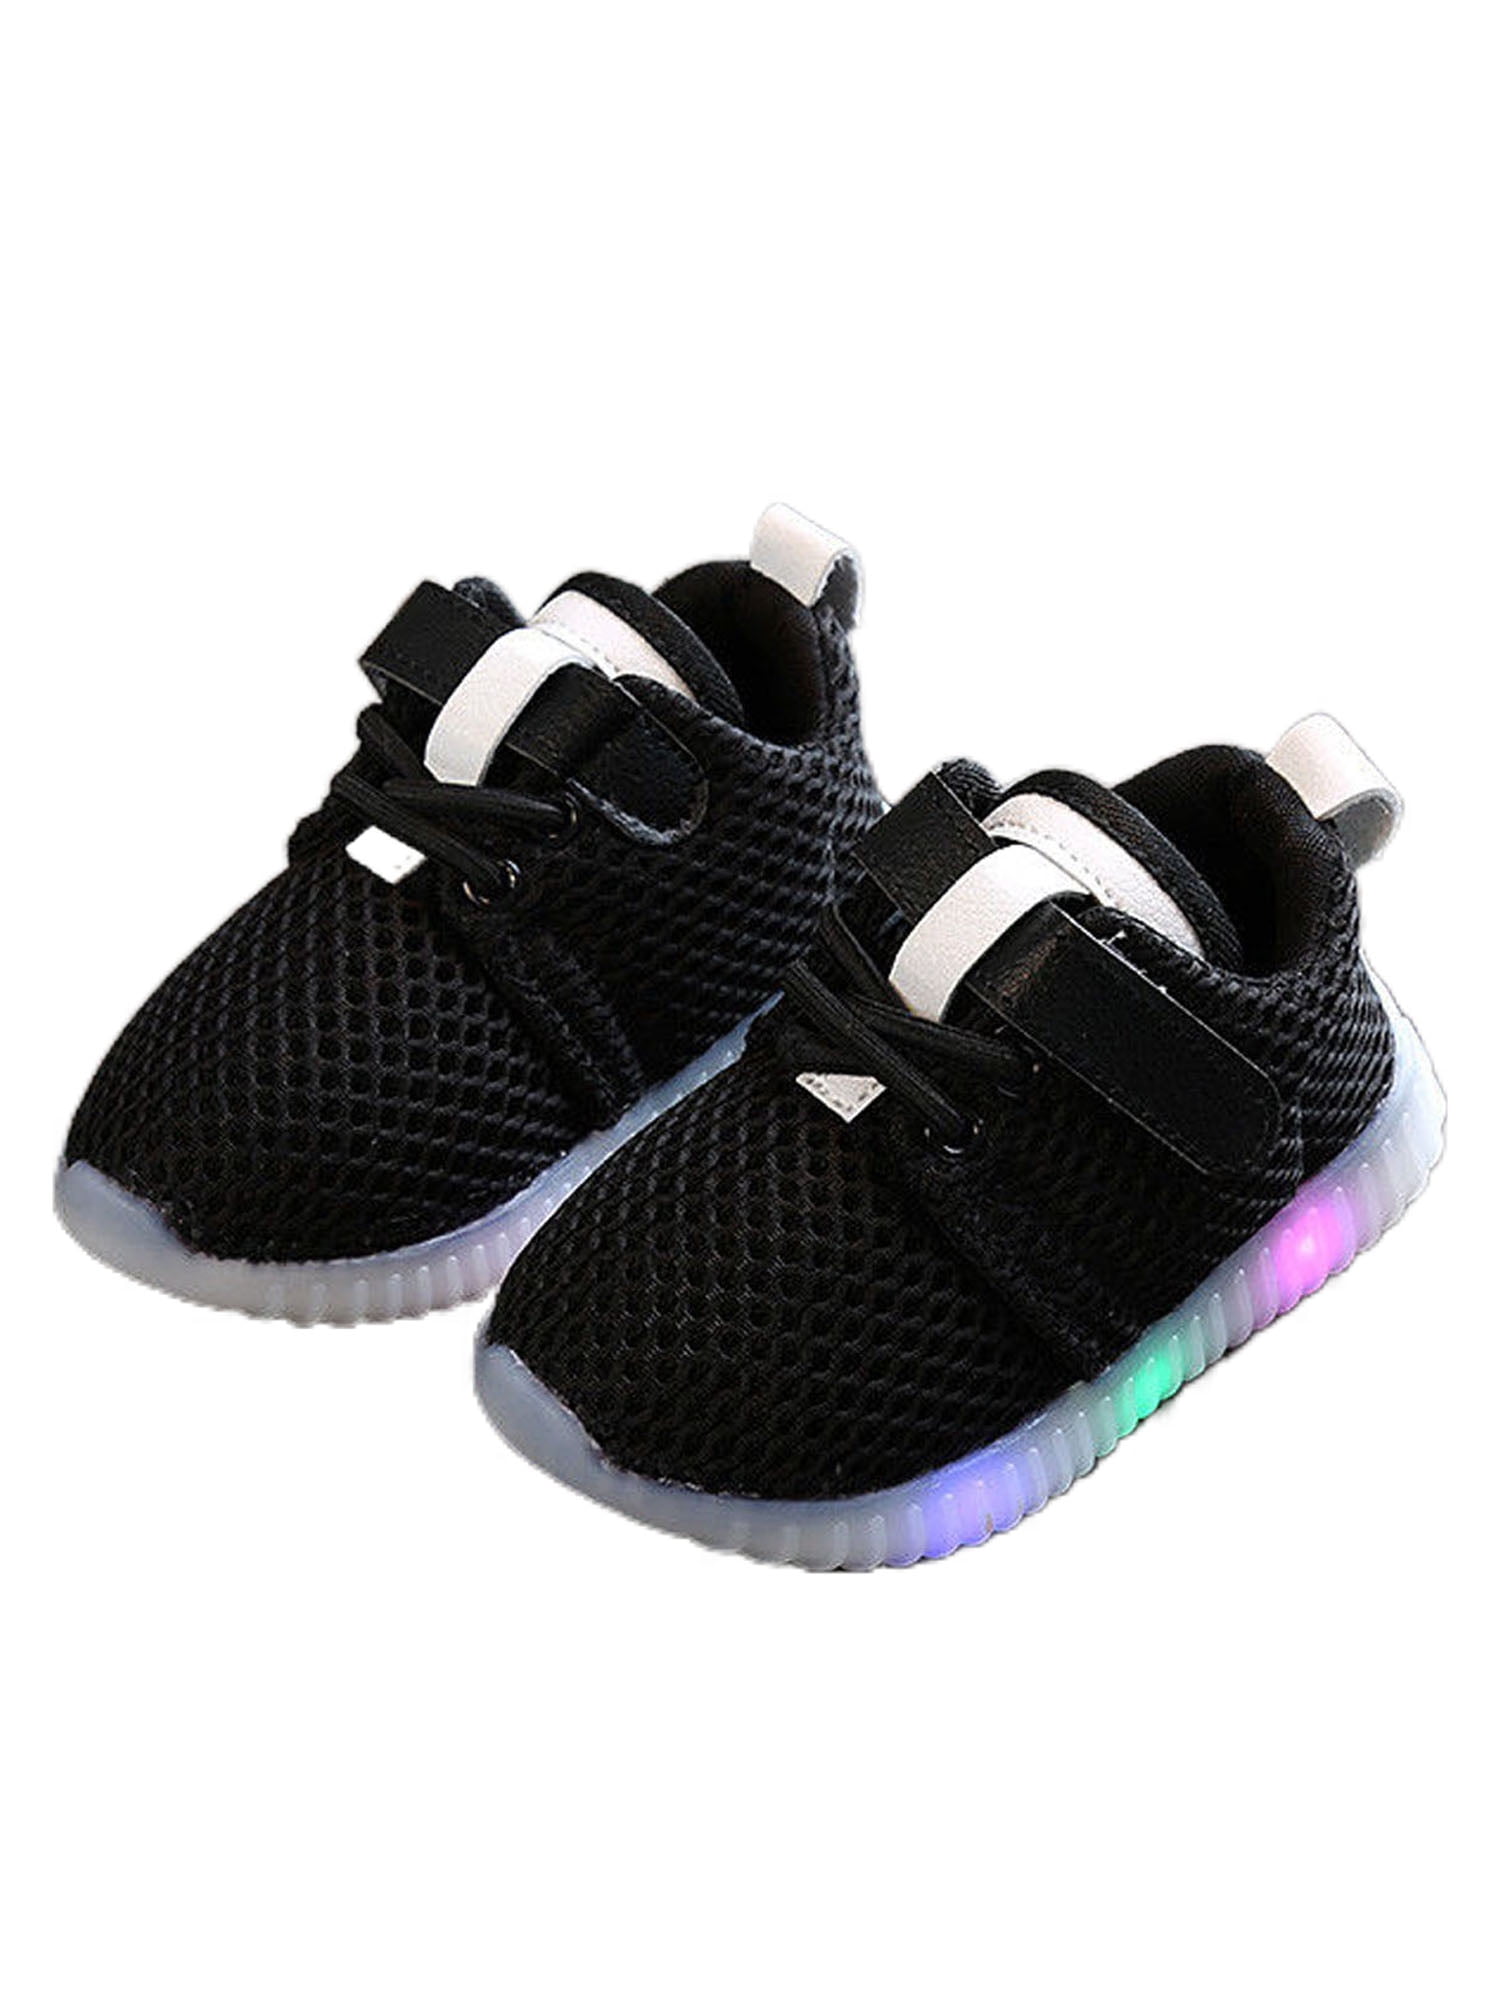 Toddler Children Boys Girls Kid LED Light Running Athletics Sneakers Baby Shoes 